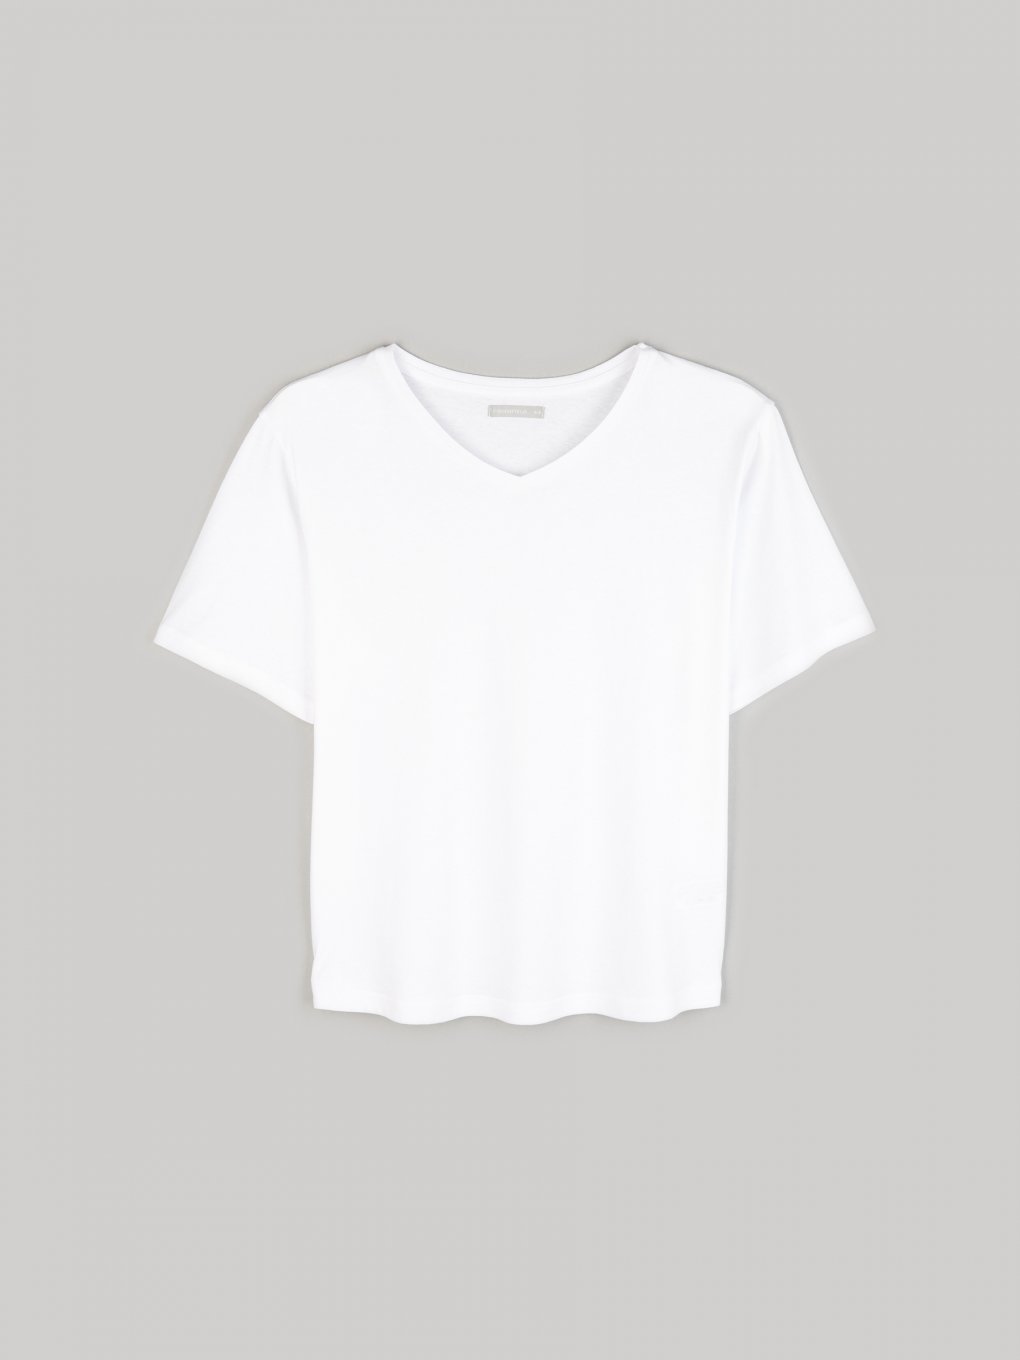 Základné bavlnené tričko s krátkym rukávom s výstrihom dámske plus size